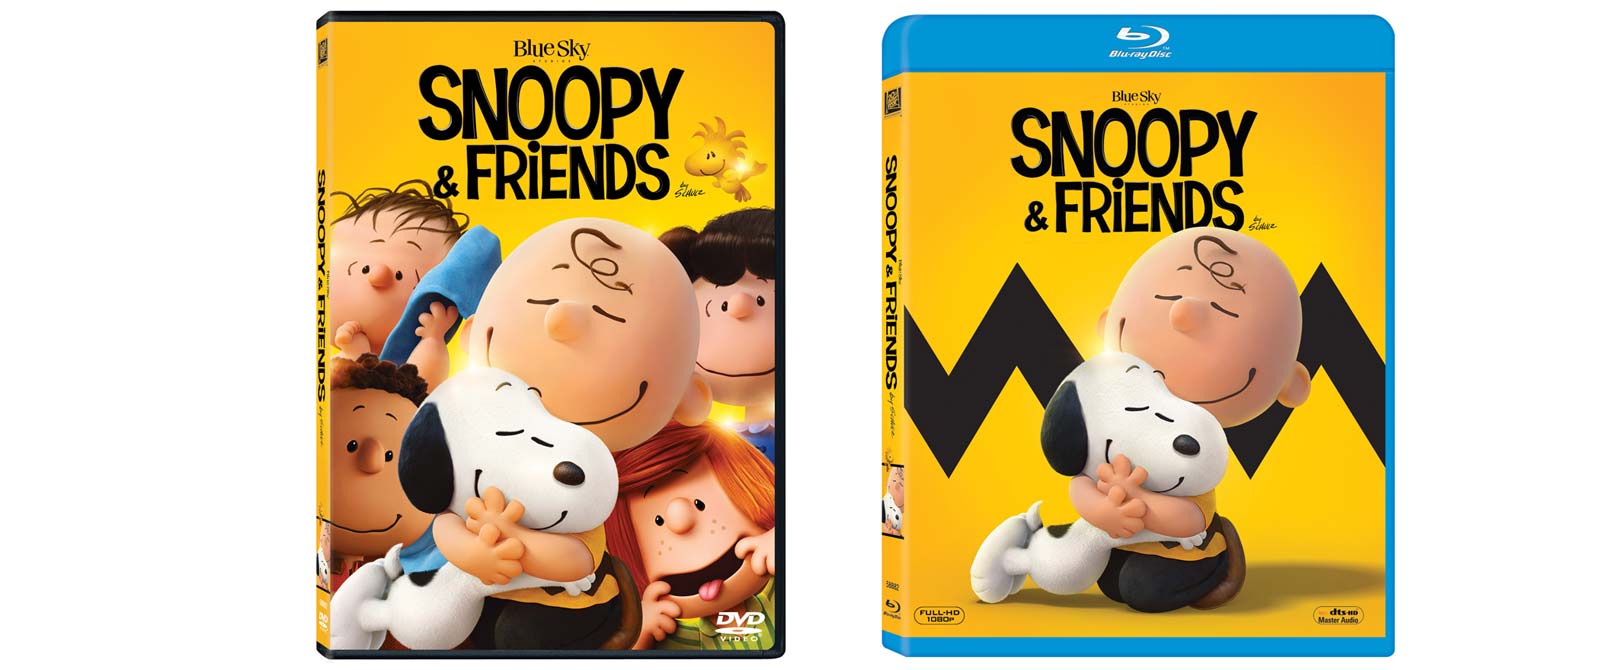 Snoopy and Friends - Il Film Dei Peanuts in DVD, Blu-ray e BD3D